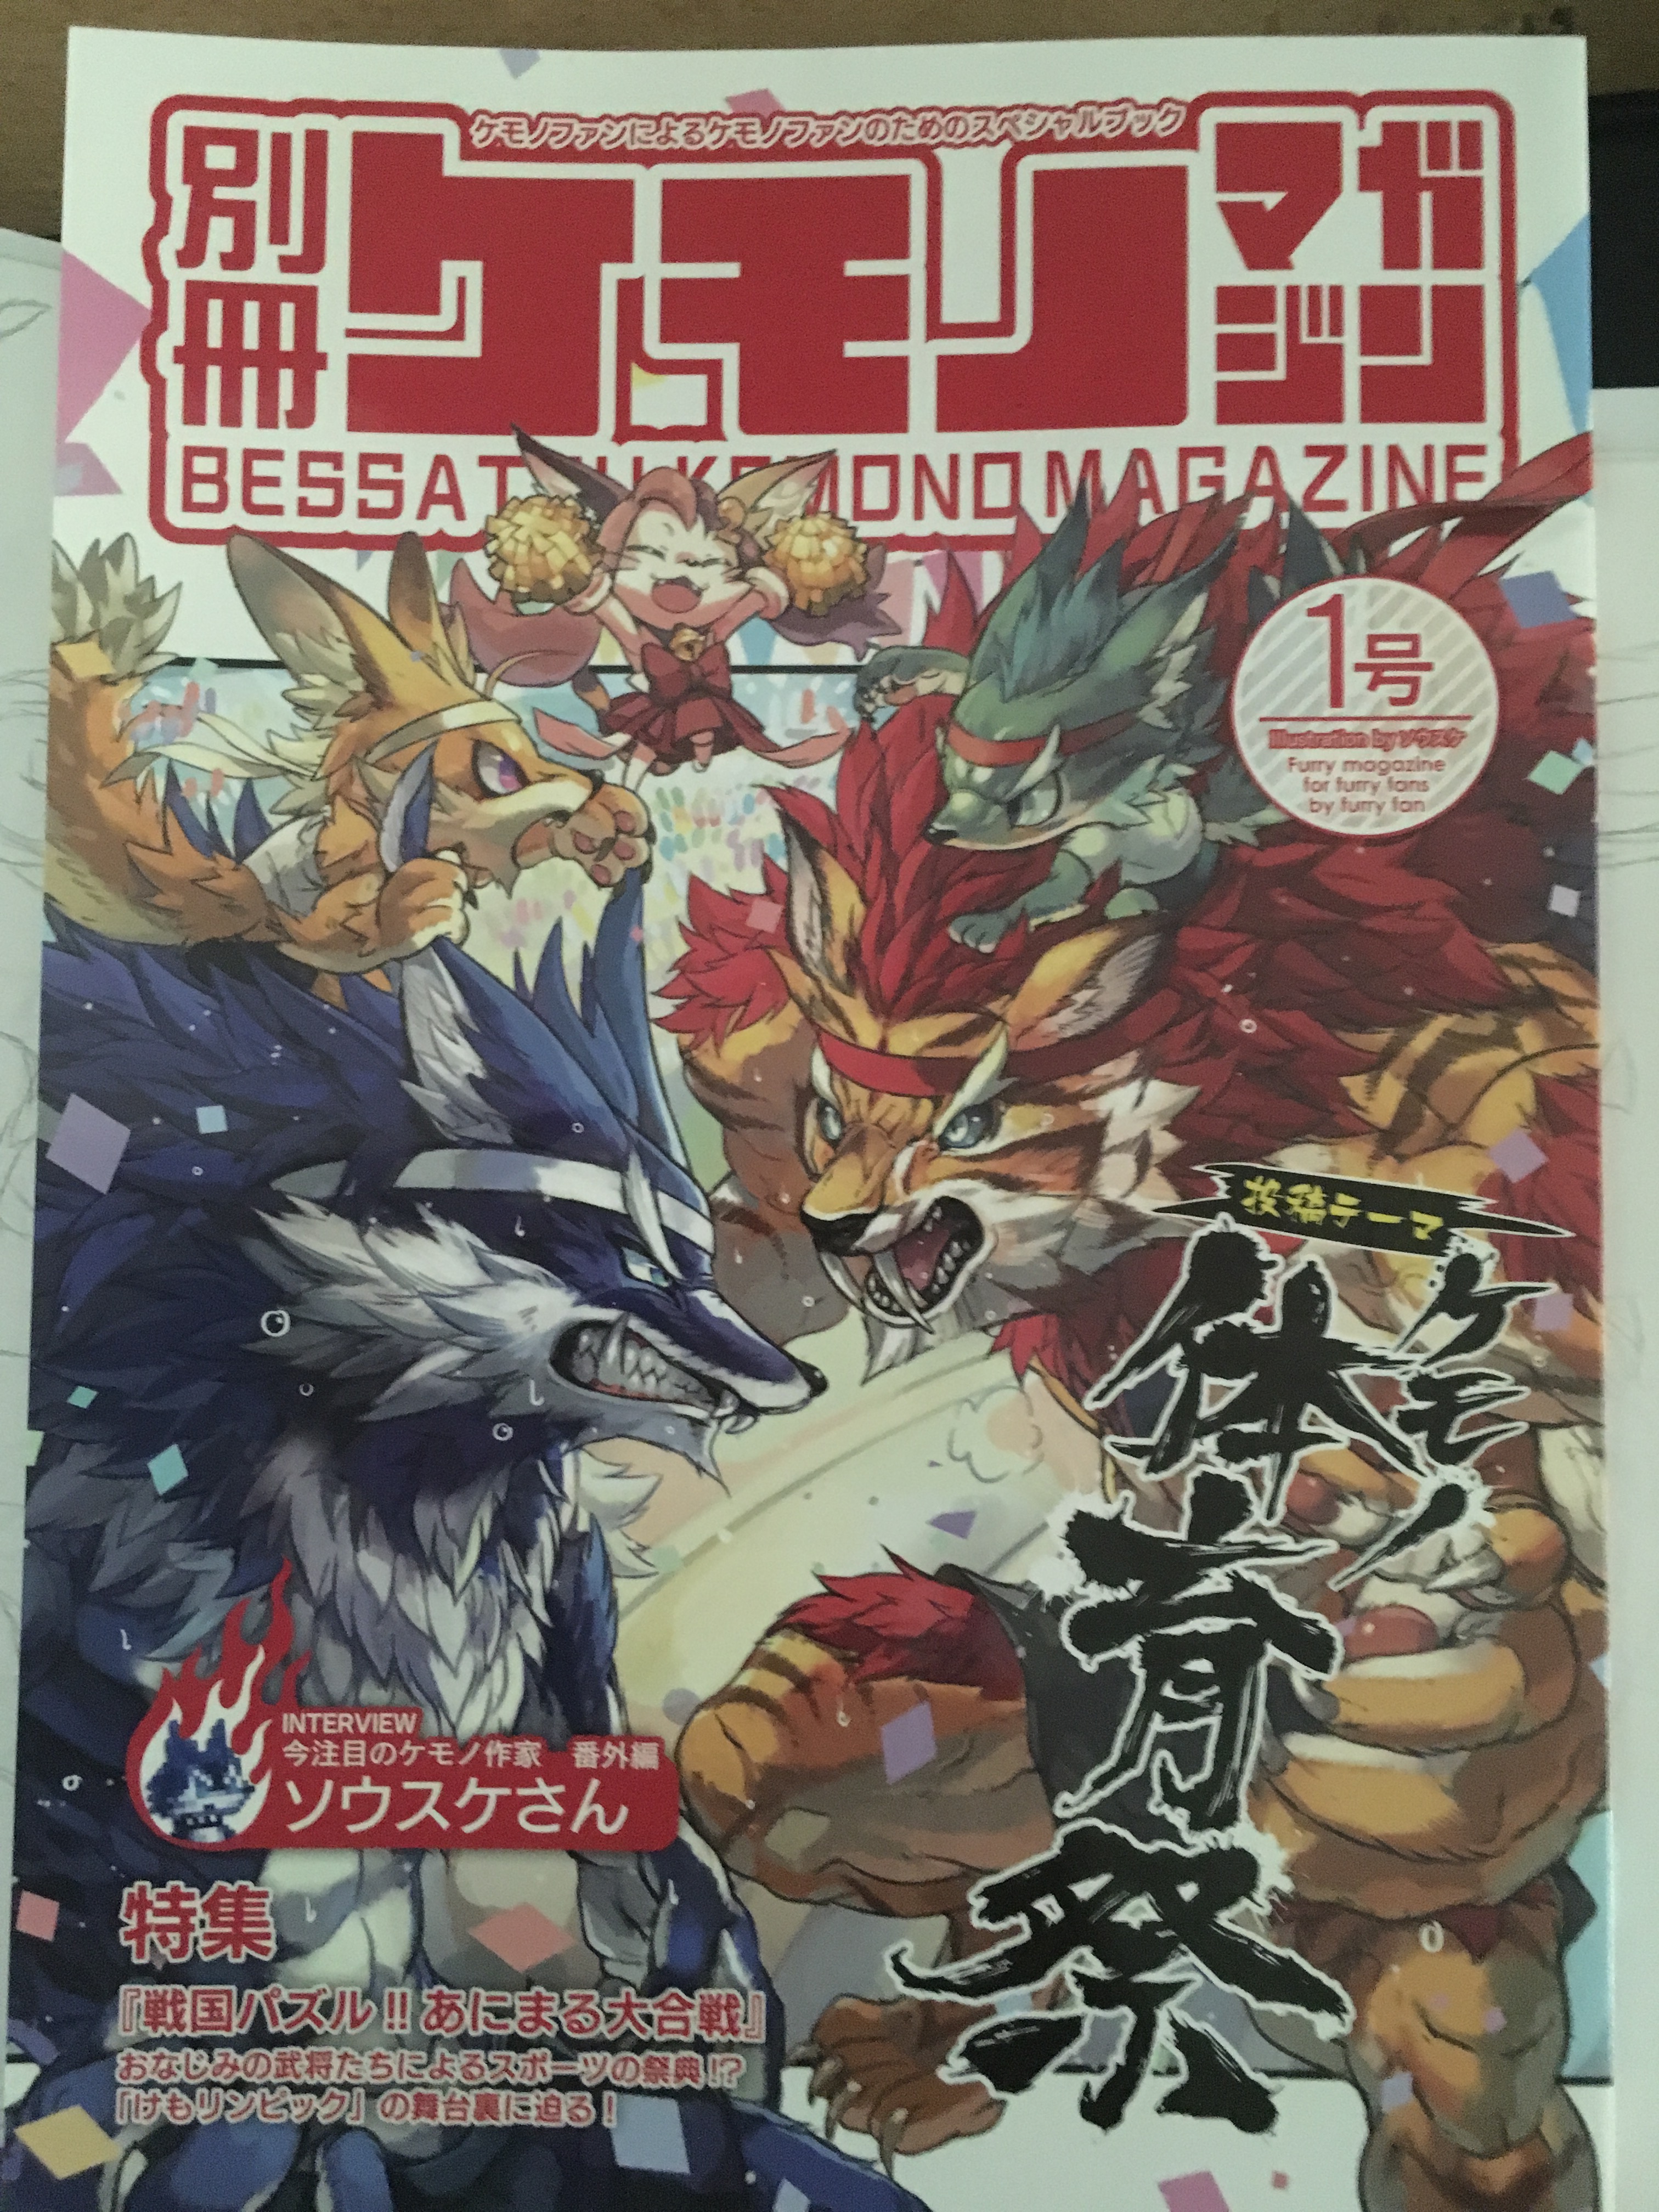 Bessatsu Kemono Magazine Books Stationery Comics Manga On Carousell